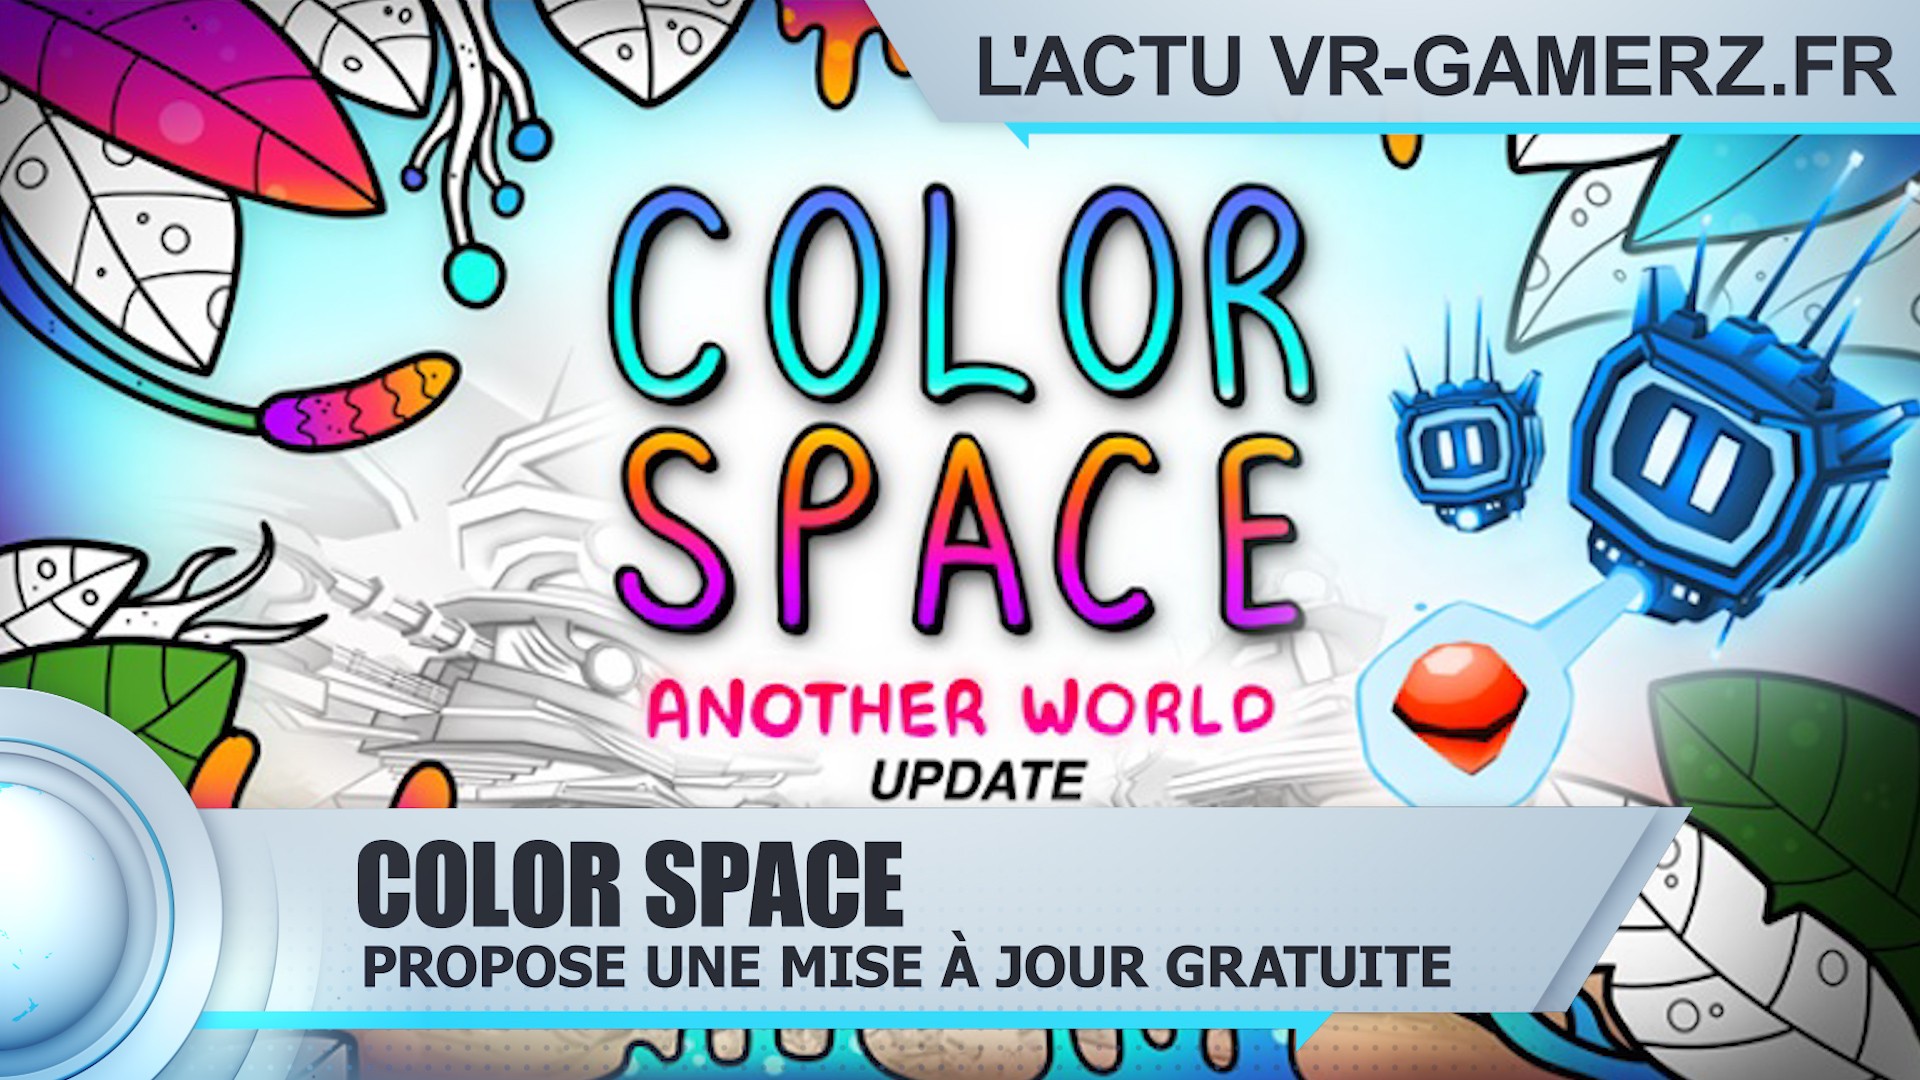 Color space propose une mise à jour gratuite